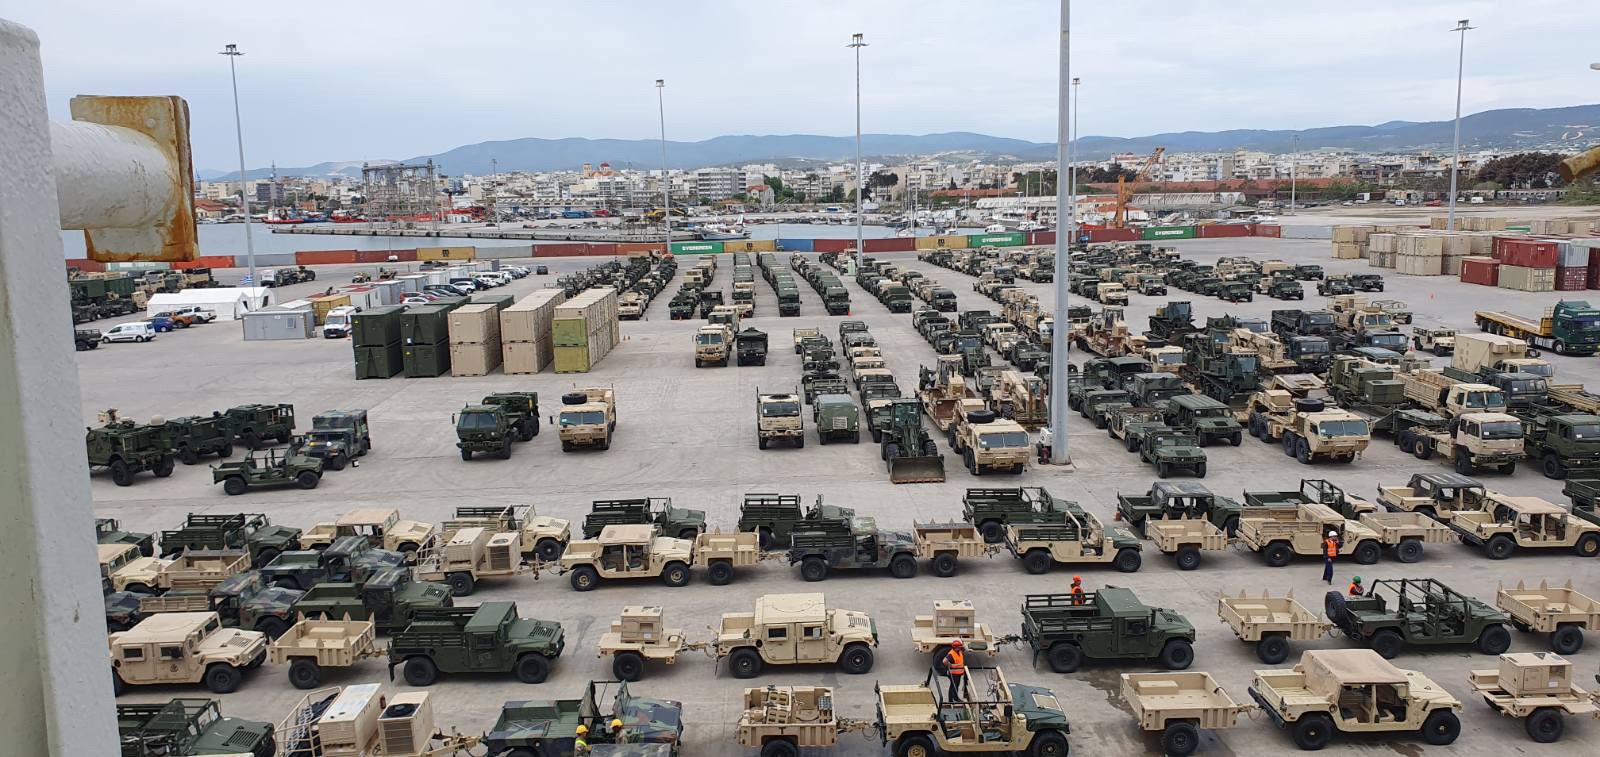 Λιμάνι Αλεξανδρούπολης: Μεγάλη επιχείρηση μεταφοράς 600 στρατιωτικών οχημάτων (pics)